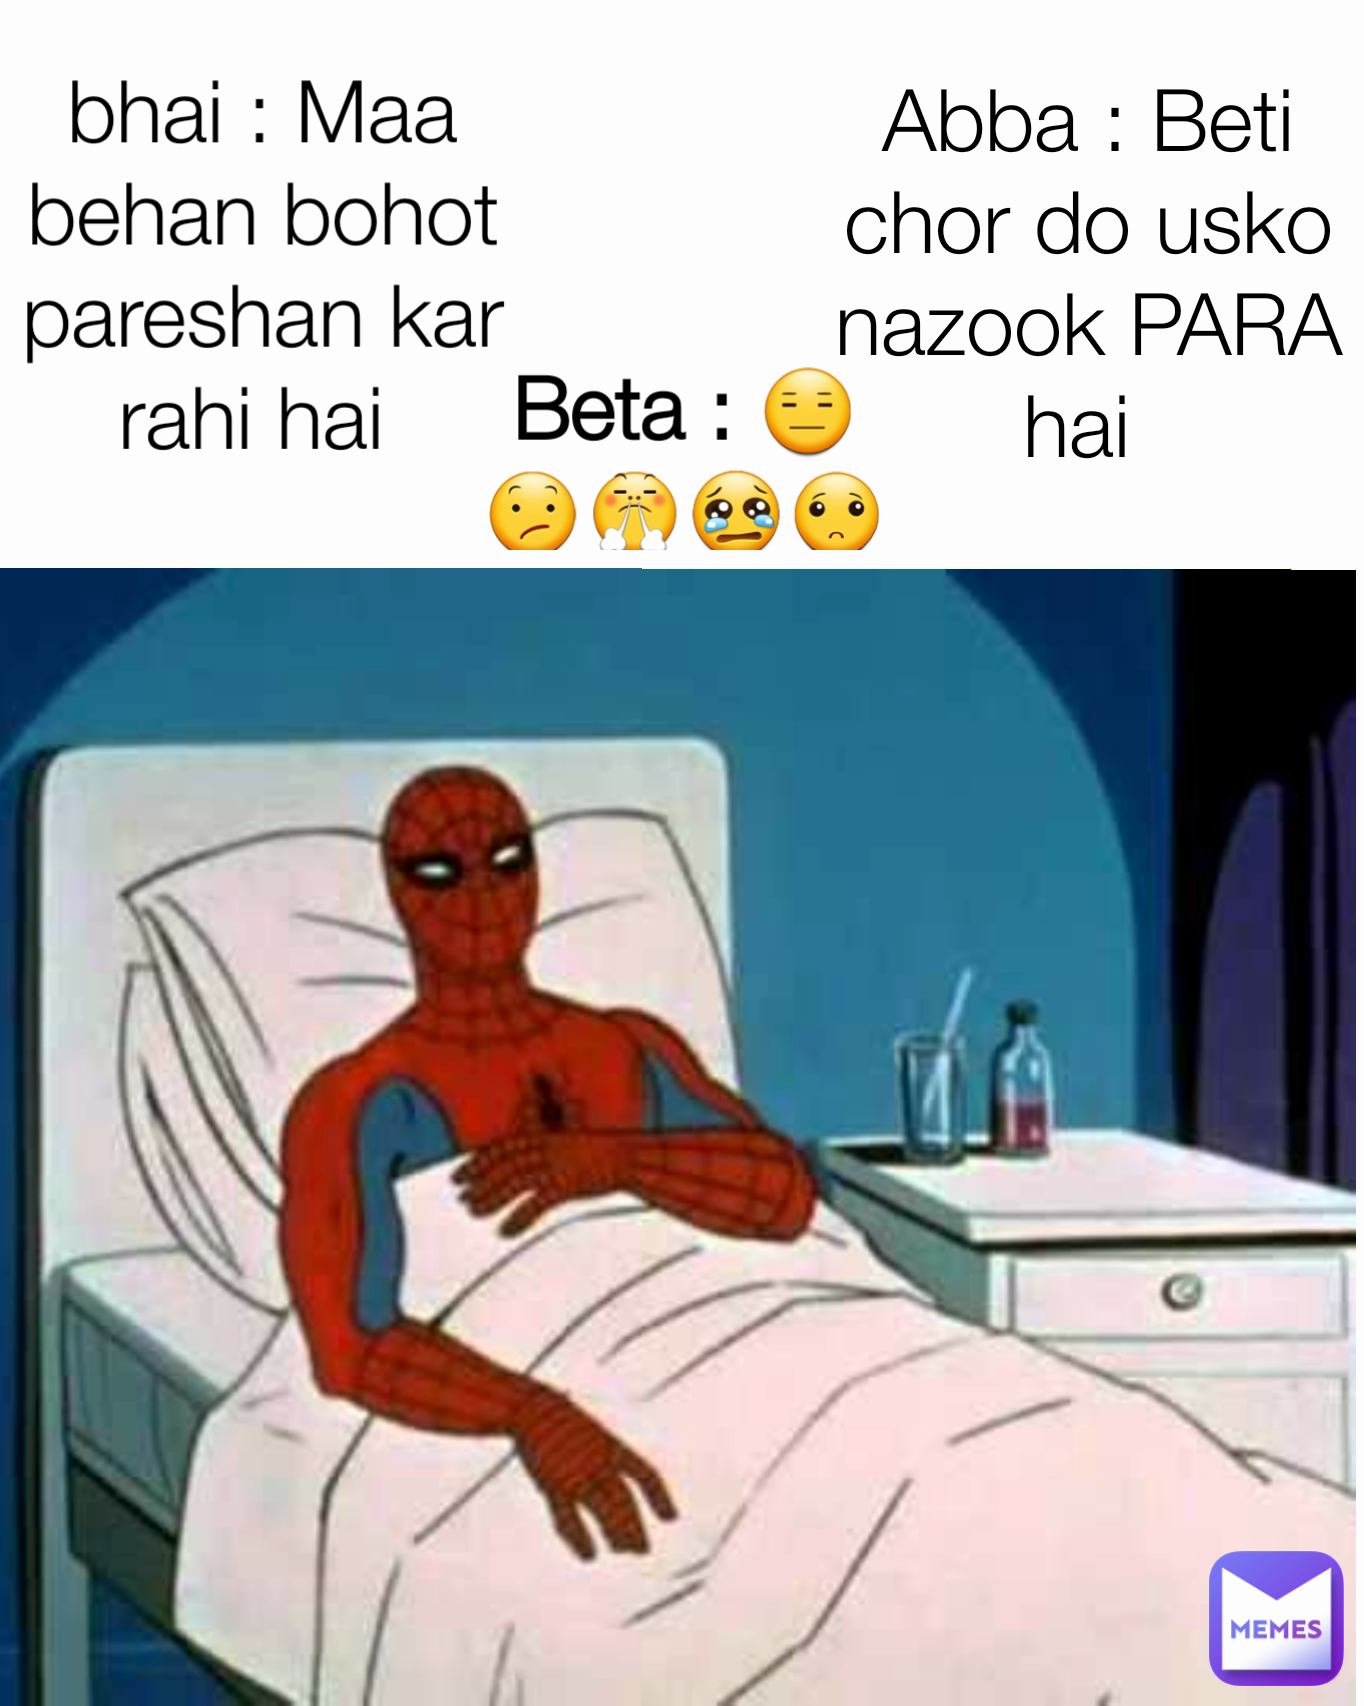 Beta : 😑😕😤😢🙁 bhai : Maa behan bohot pareshan kar rahi hai Type Text  Abba : Beti chor do usko nazook PARA hai | @farwa_1640589387 | Memes